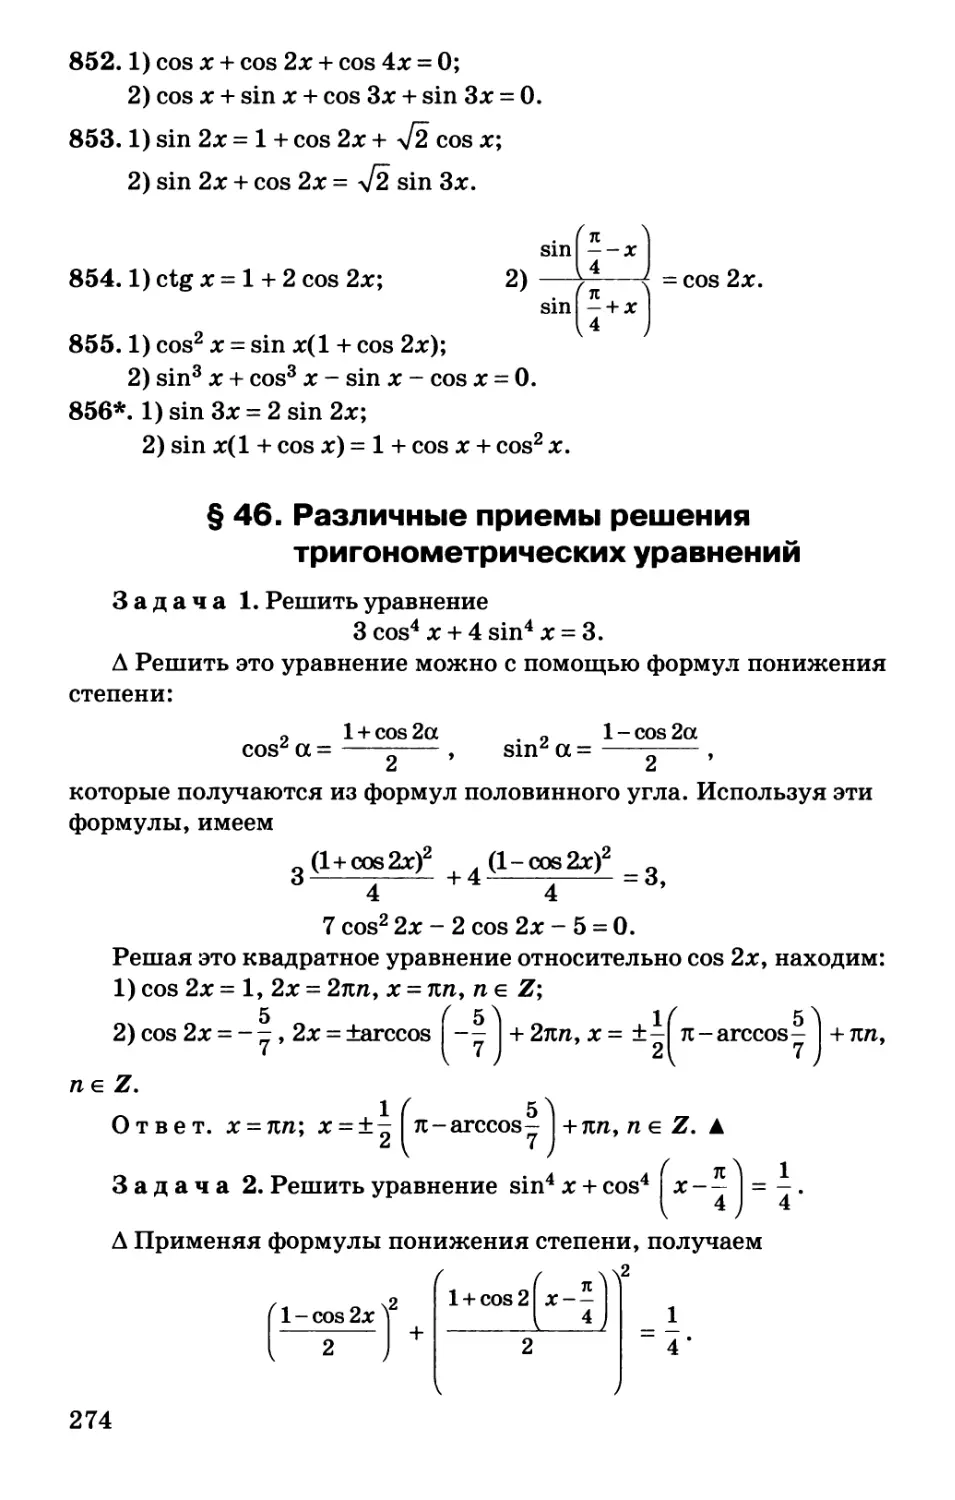 § 46. Различные приемы решения тригонометрических уравнений